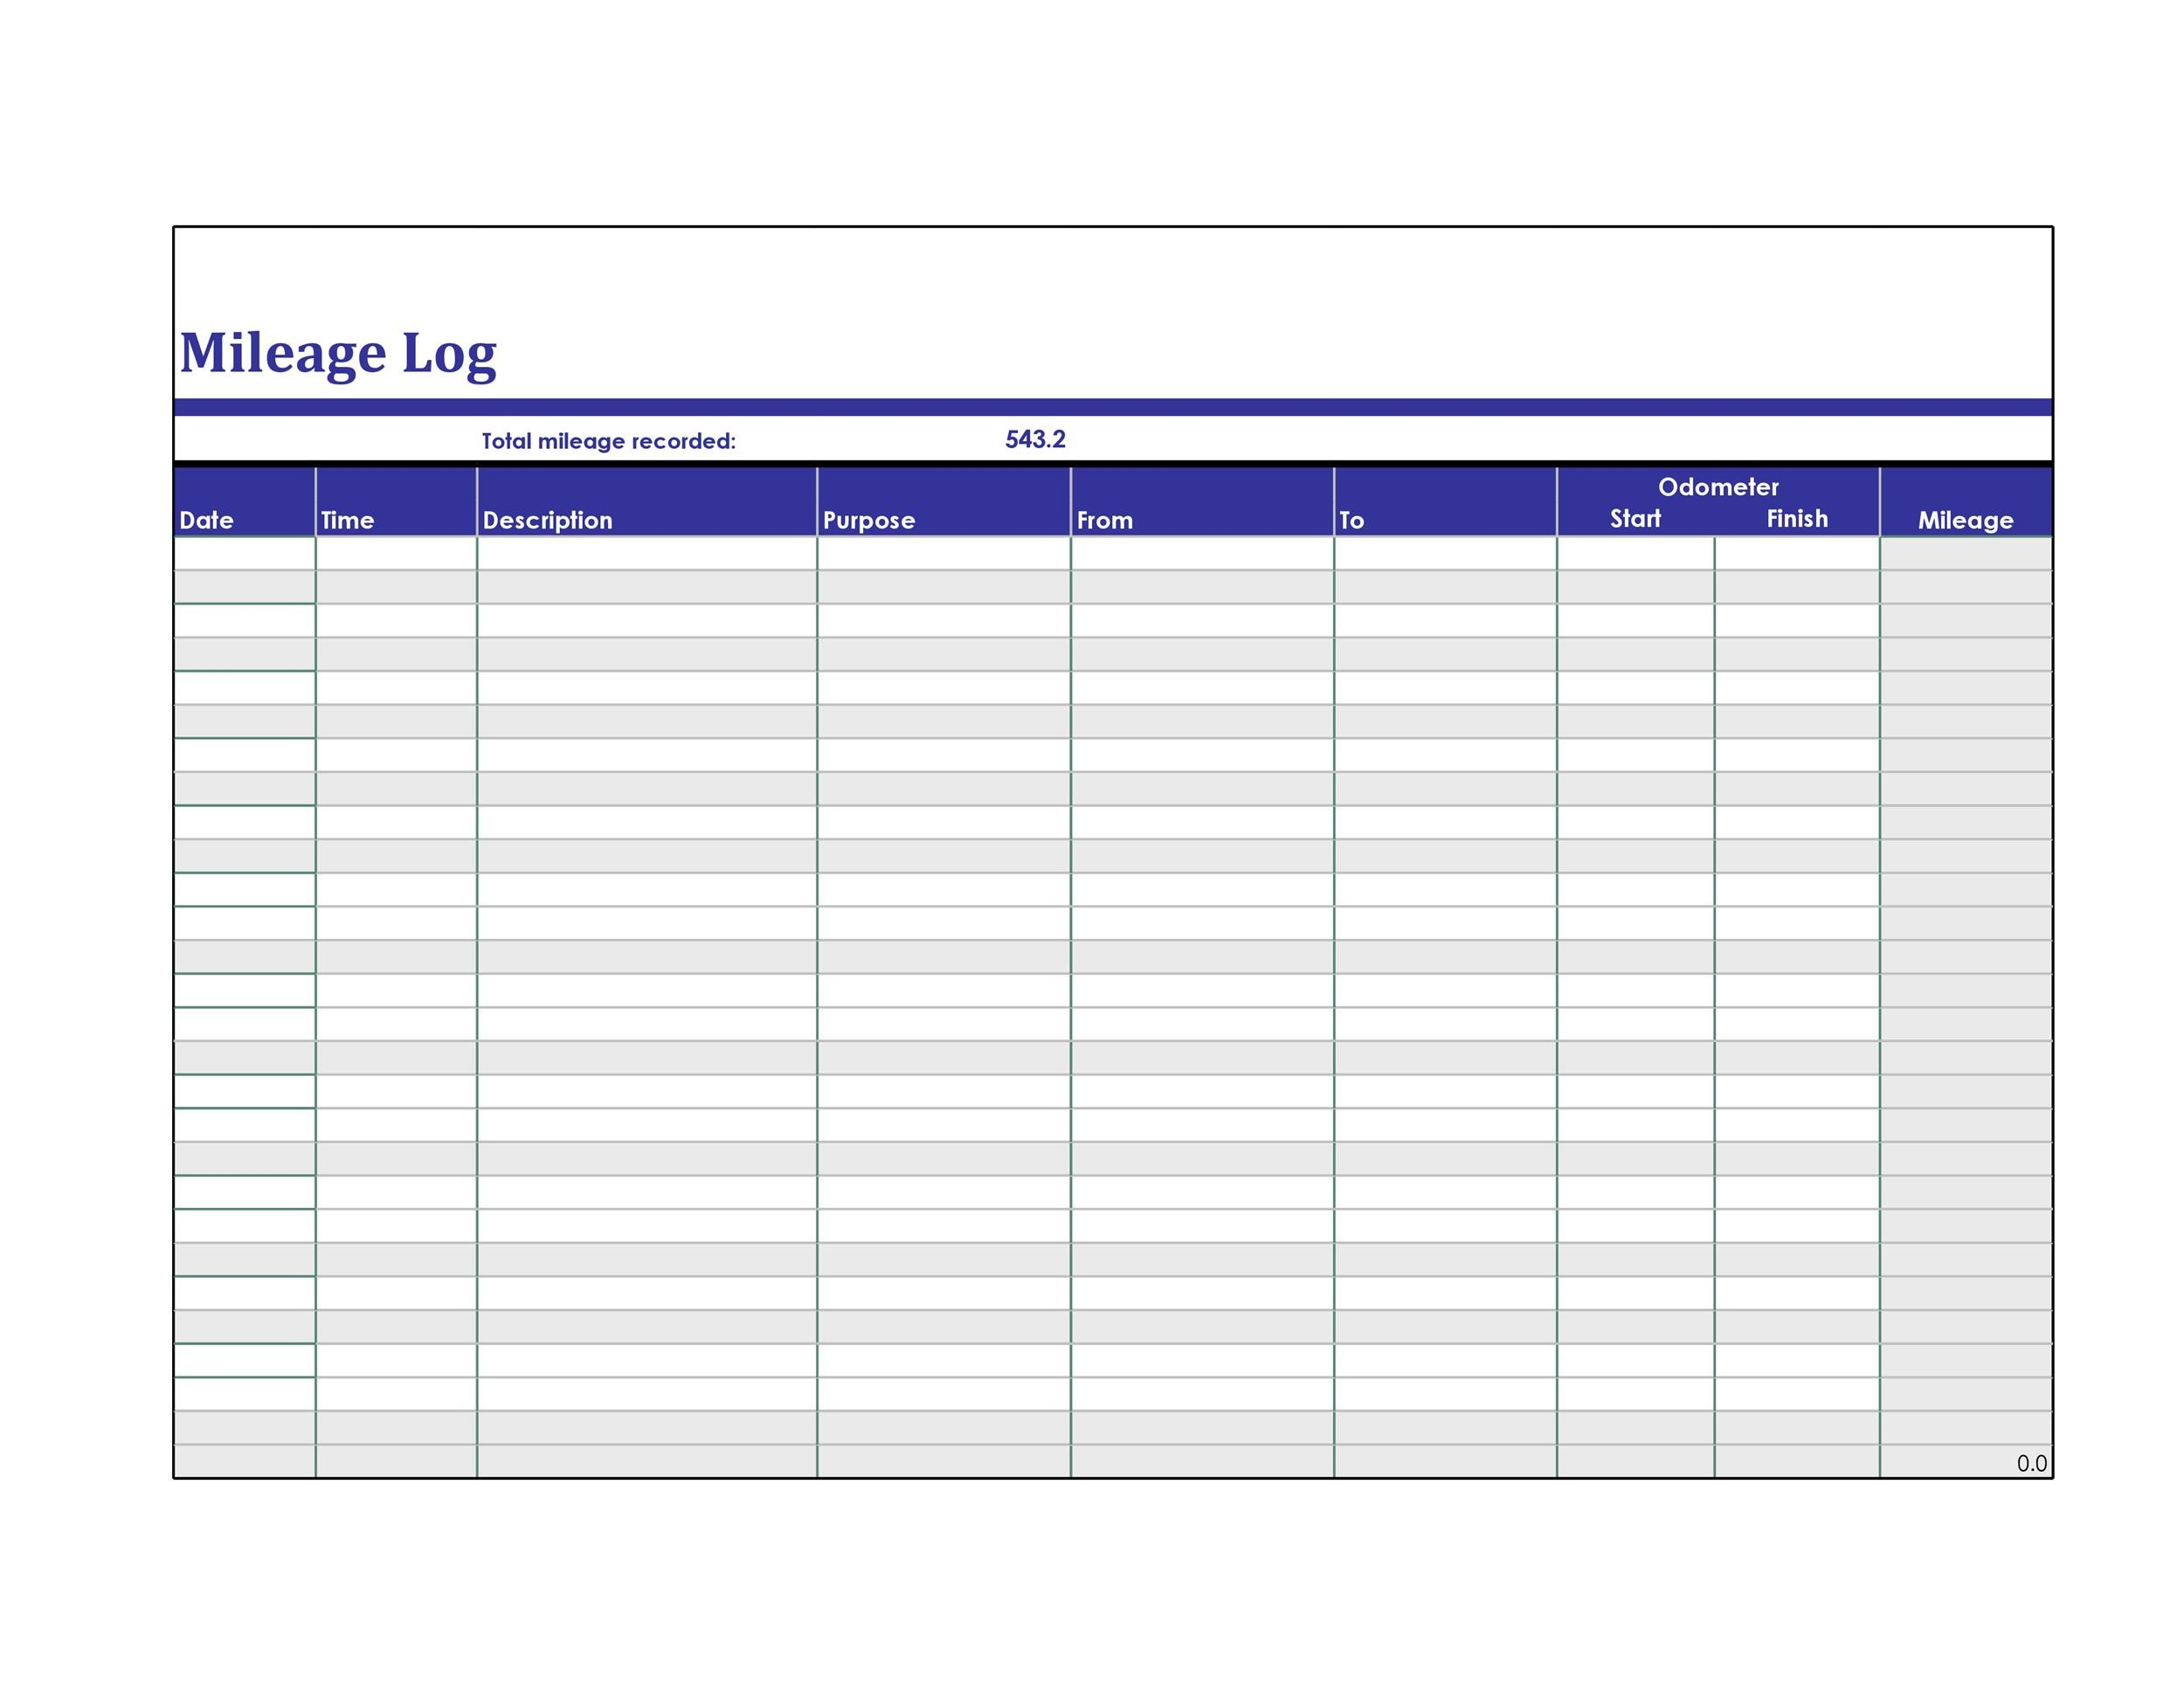 Mileage Log Sheet